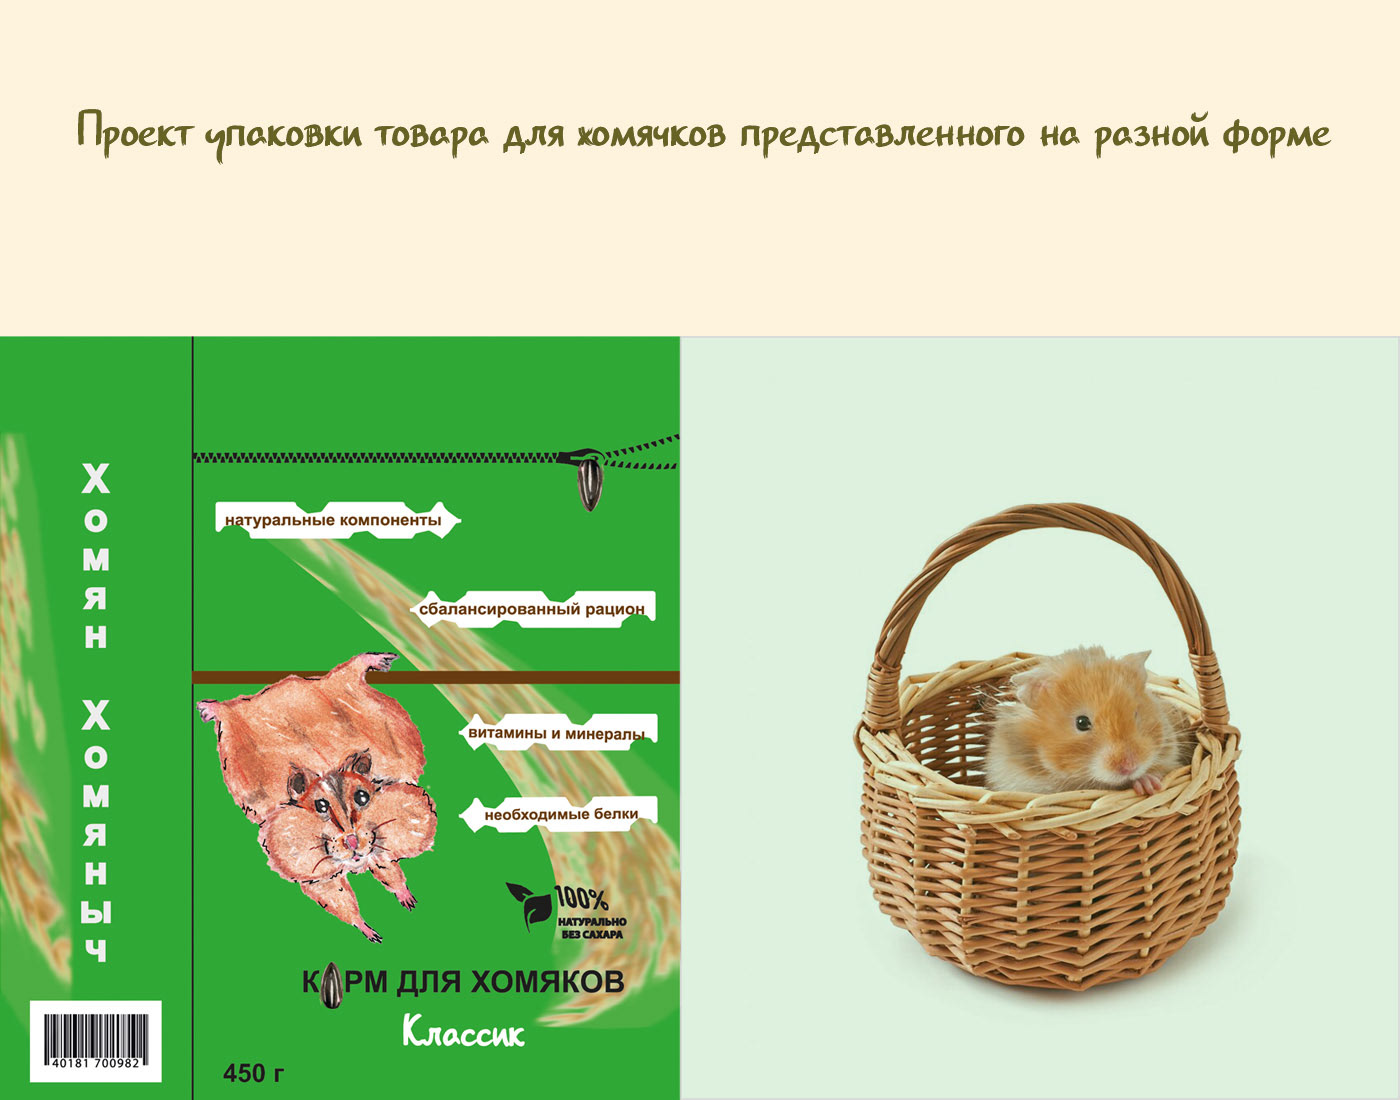 упаковка дизайн графический дизайн forma концепция корм дизайн упаковки корм для животных упаковка товара